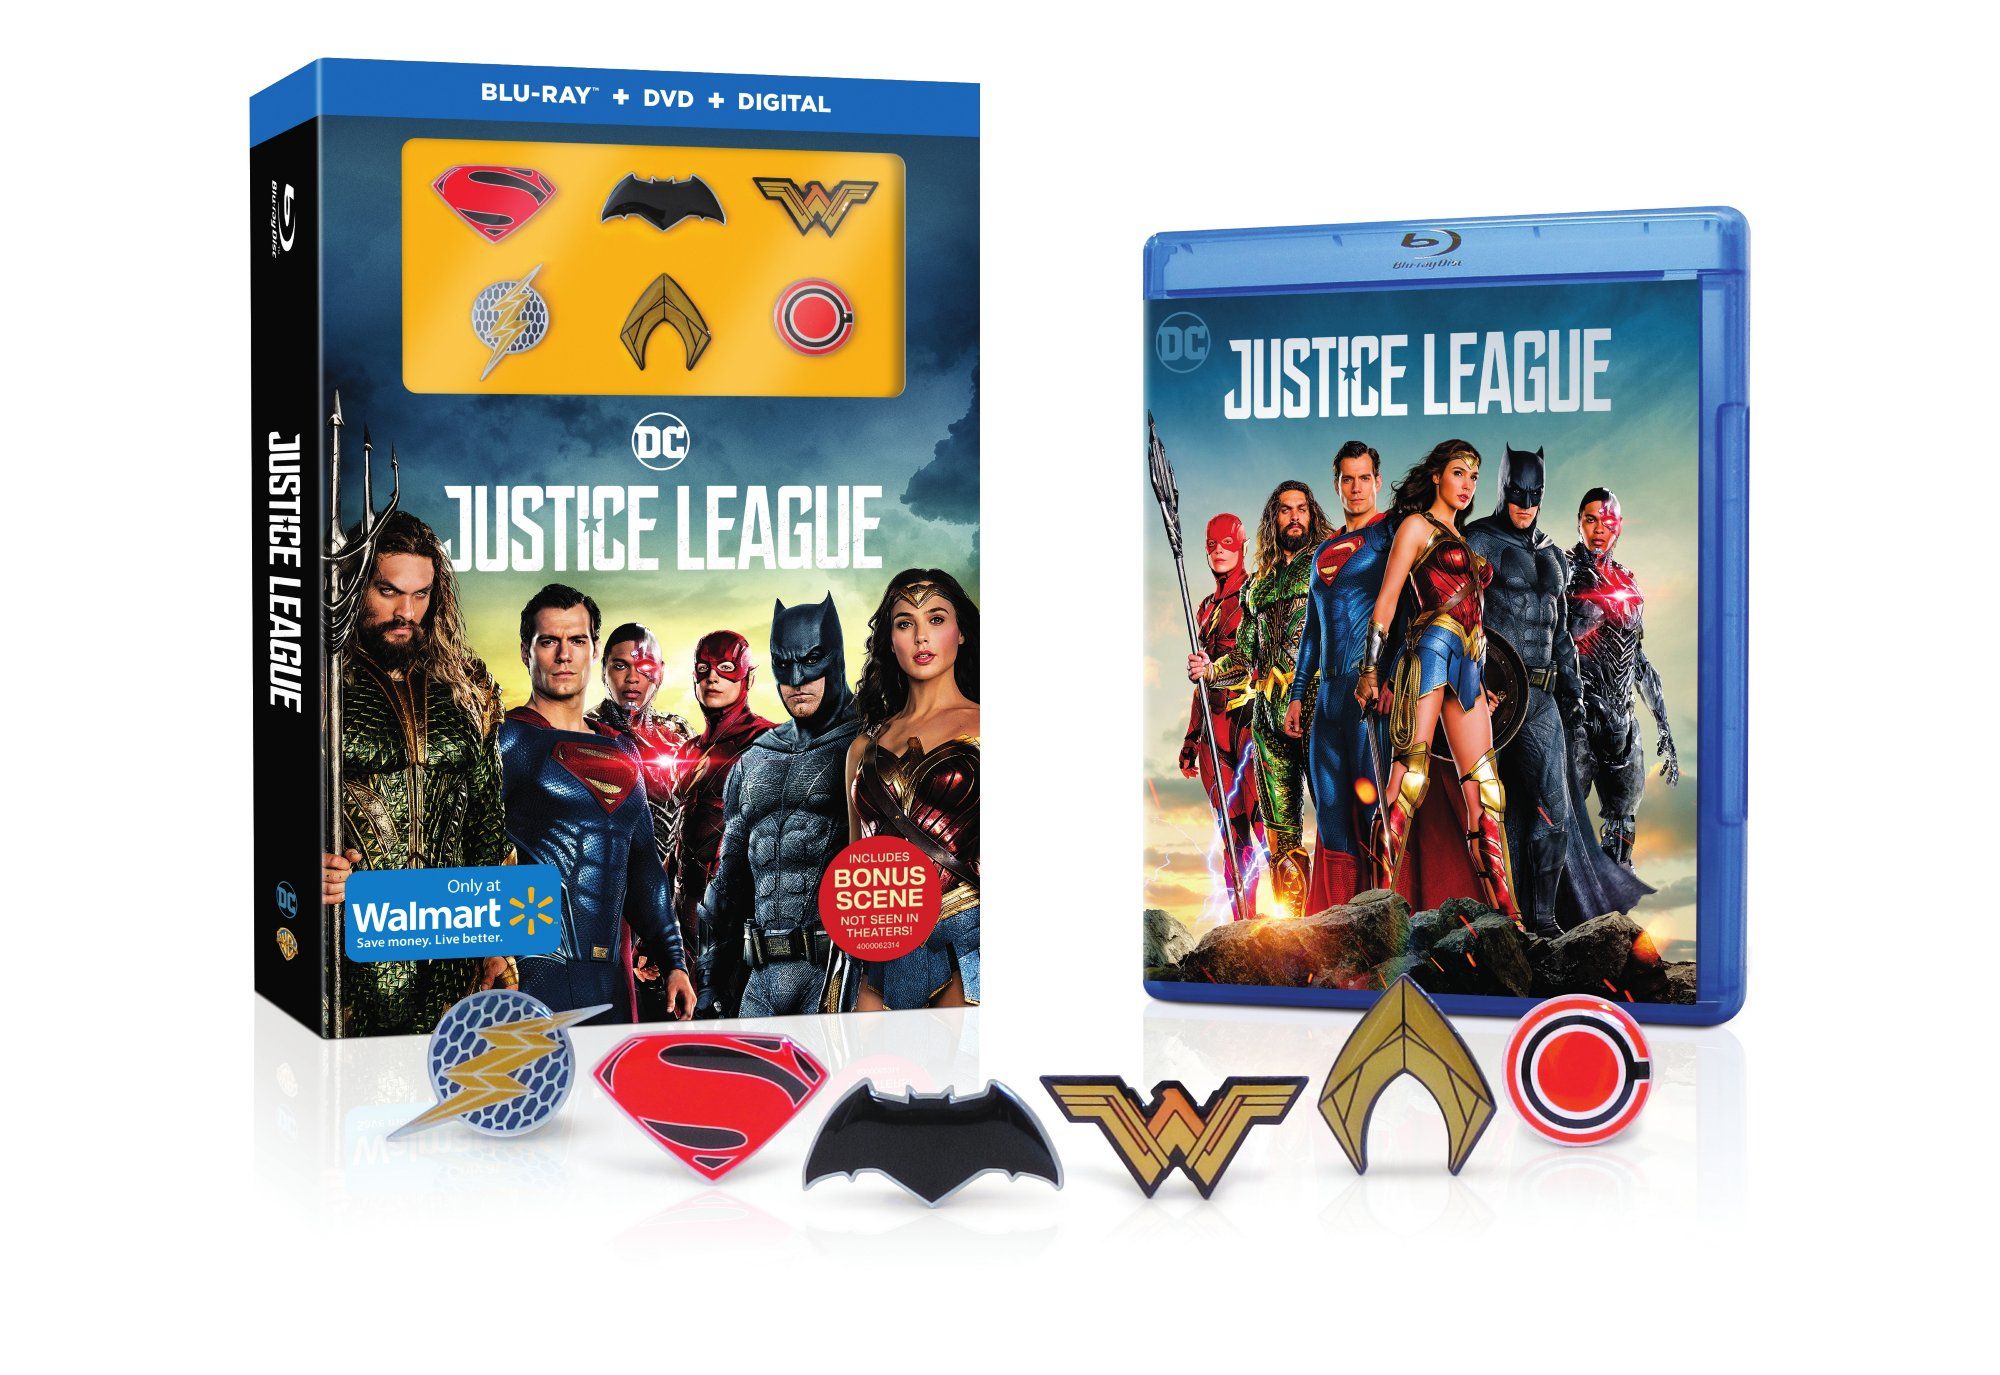 Justice League Blu-ray zawiera dodatkową scenę, która nie jest pokazywana w kinach